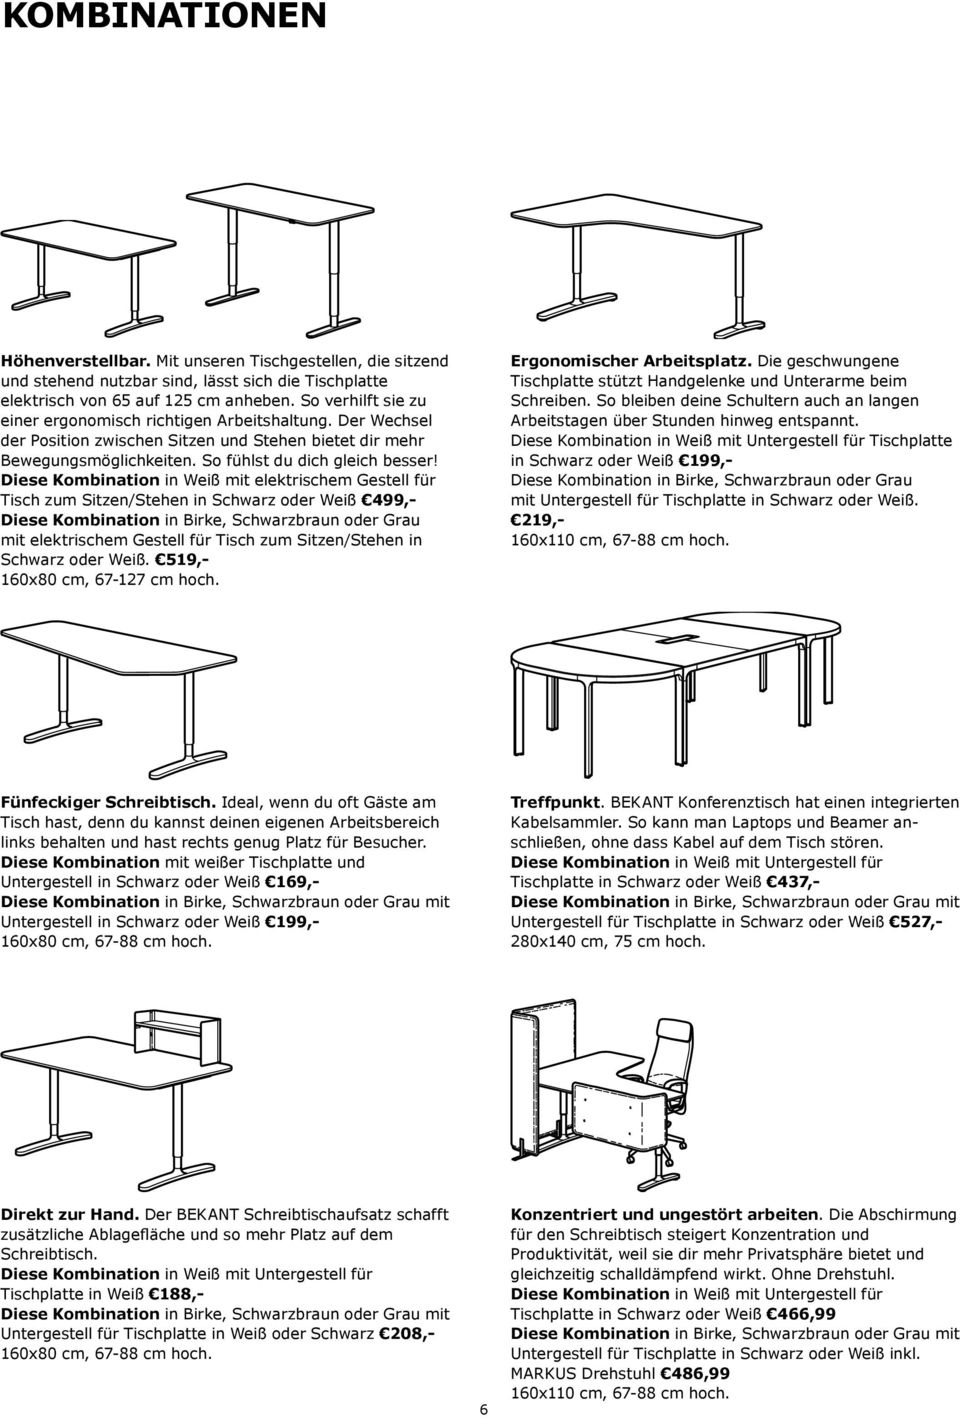 Diese Kombination in Weiß mit elektrischem Gestell für Tisch zum Sitzen/Stehen in Schwarz oder Weiß 499,- Diese Kombination in Birke, Schwarzbraun oder Grau mit elektrischem Gestell für Tisch zum